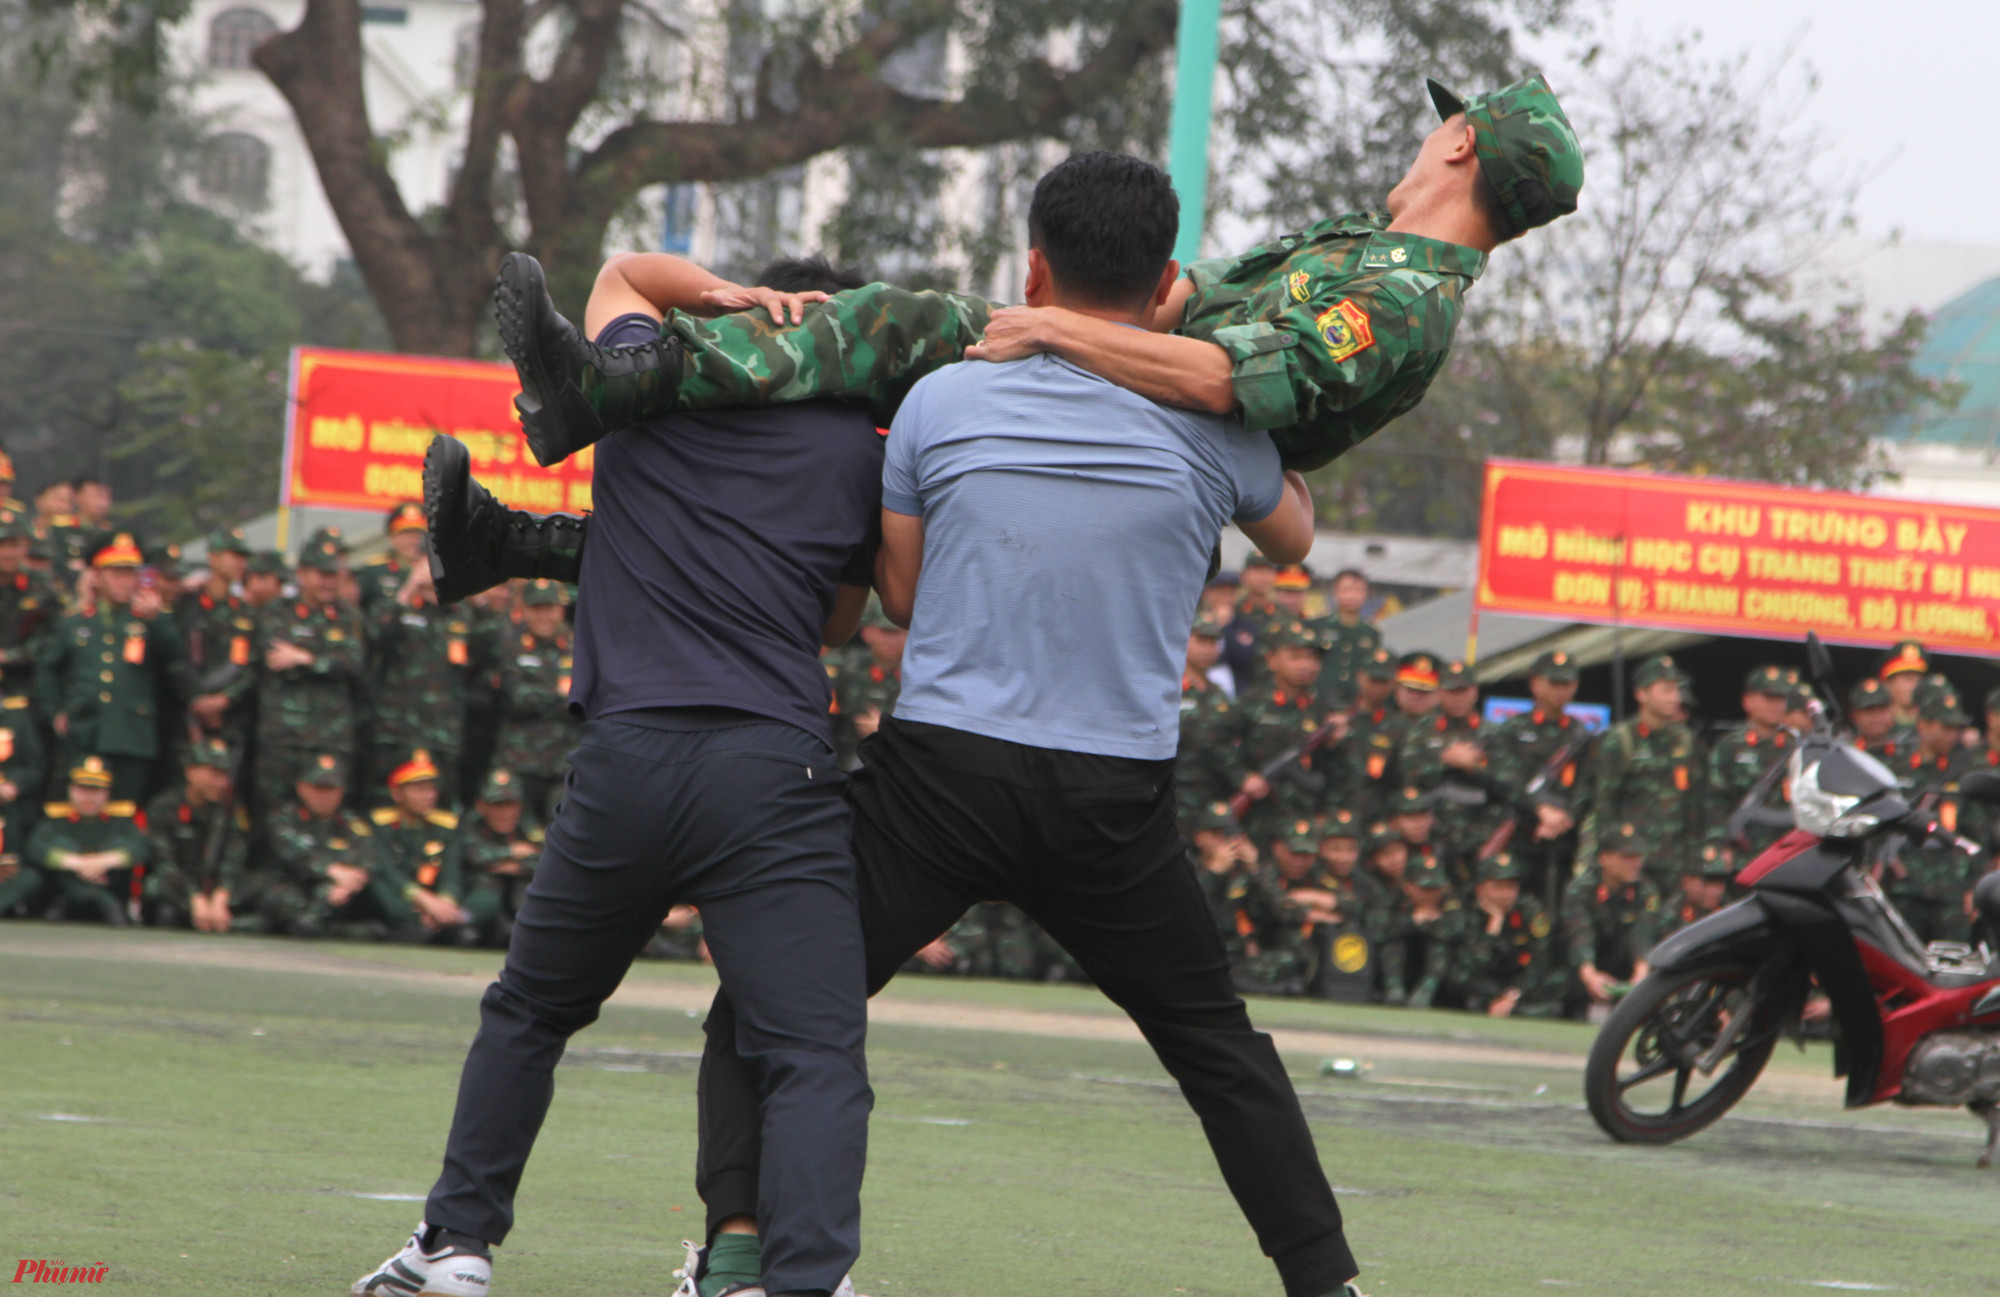 Trong buổi lễ ra quân, lực lượng vũ trang tỉnh Nghệ An đã thể hiện nhiều bài võ thuật độc đáo, nhiều tình huống trấn áp tội phạm nguy hiểm.